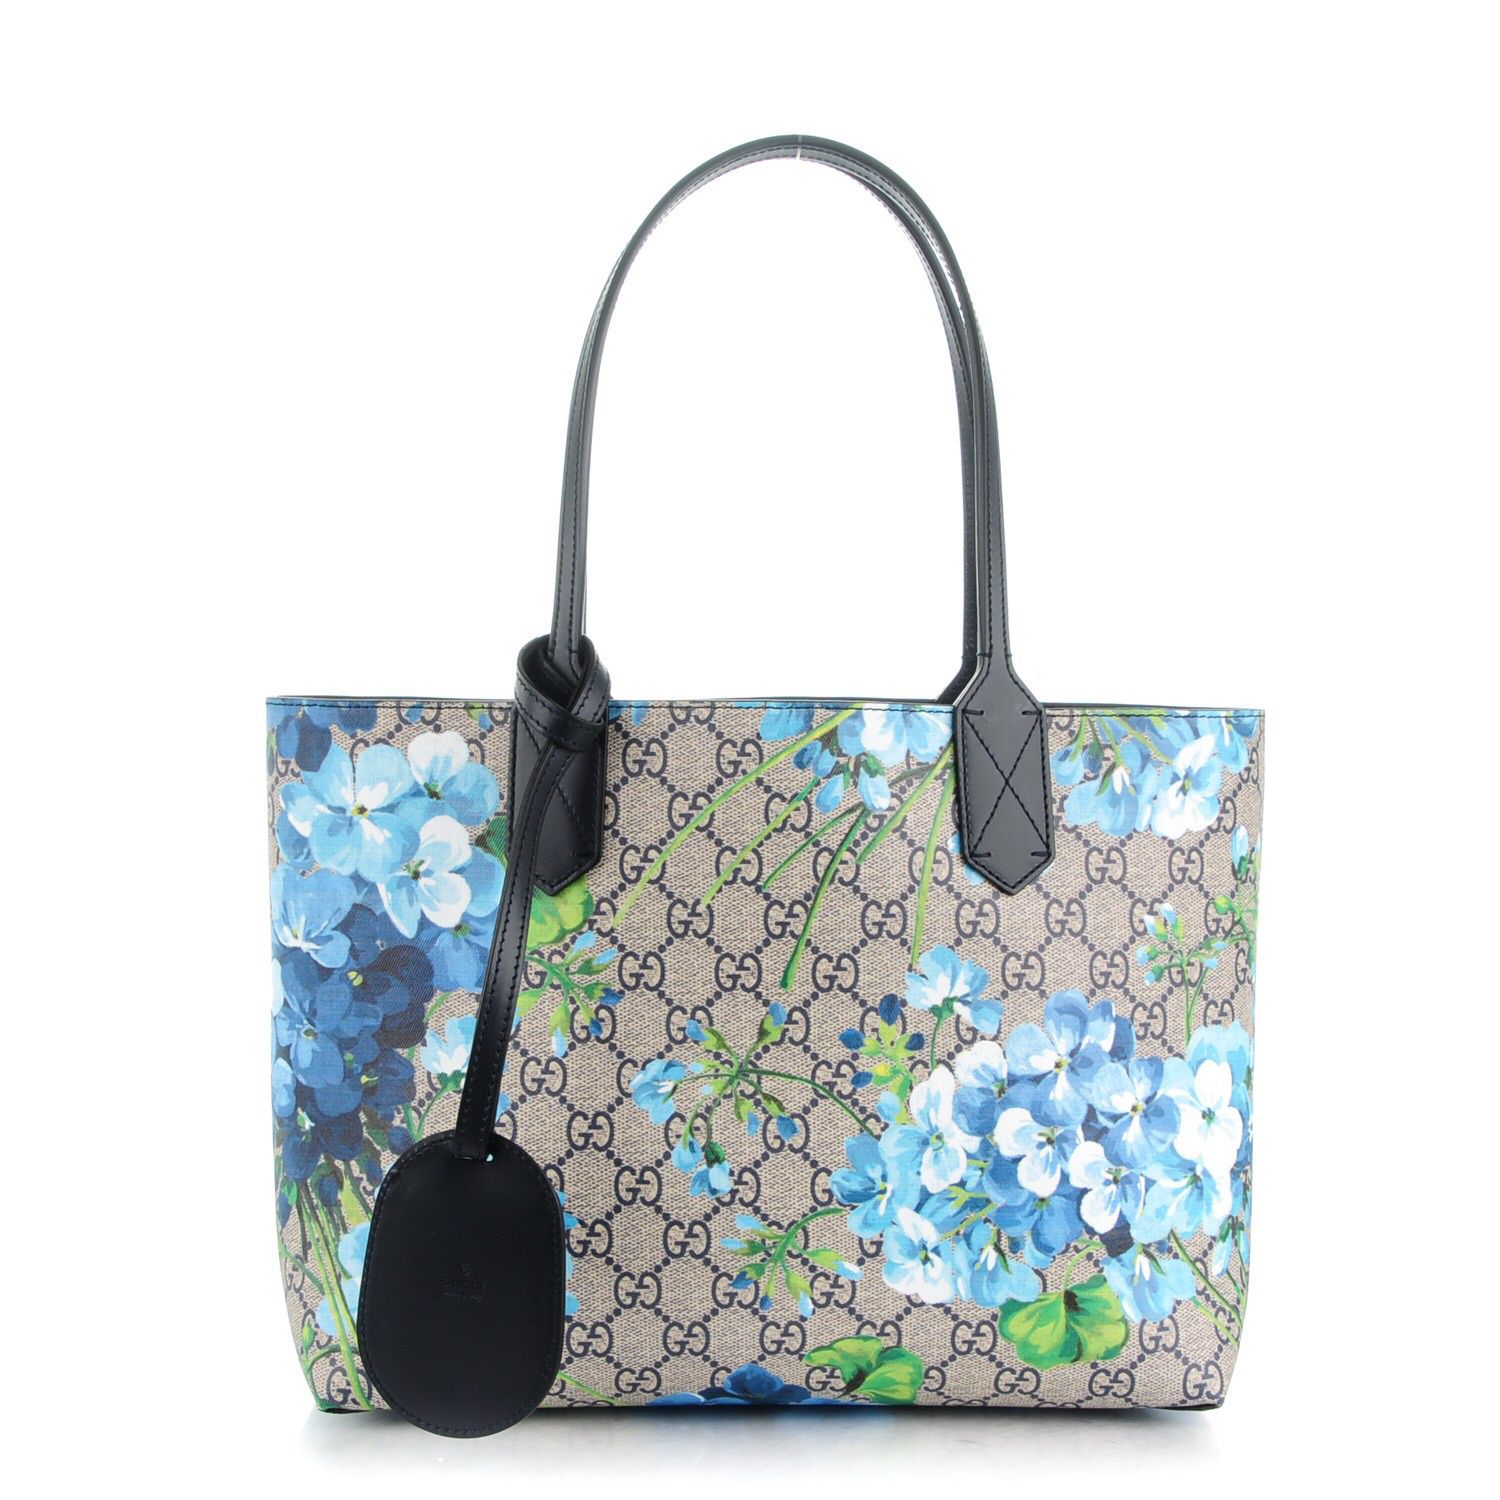 RARE Gucci Blooms ReversibleTote Bag